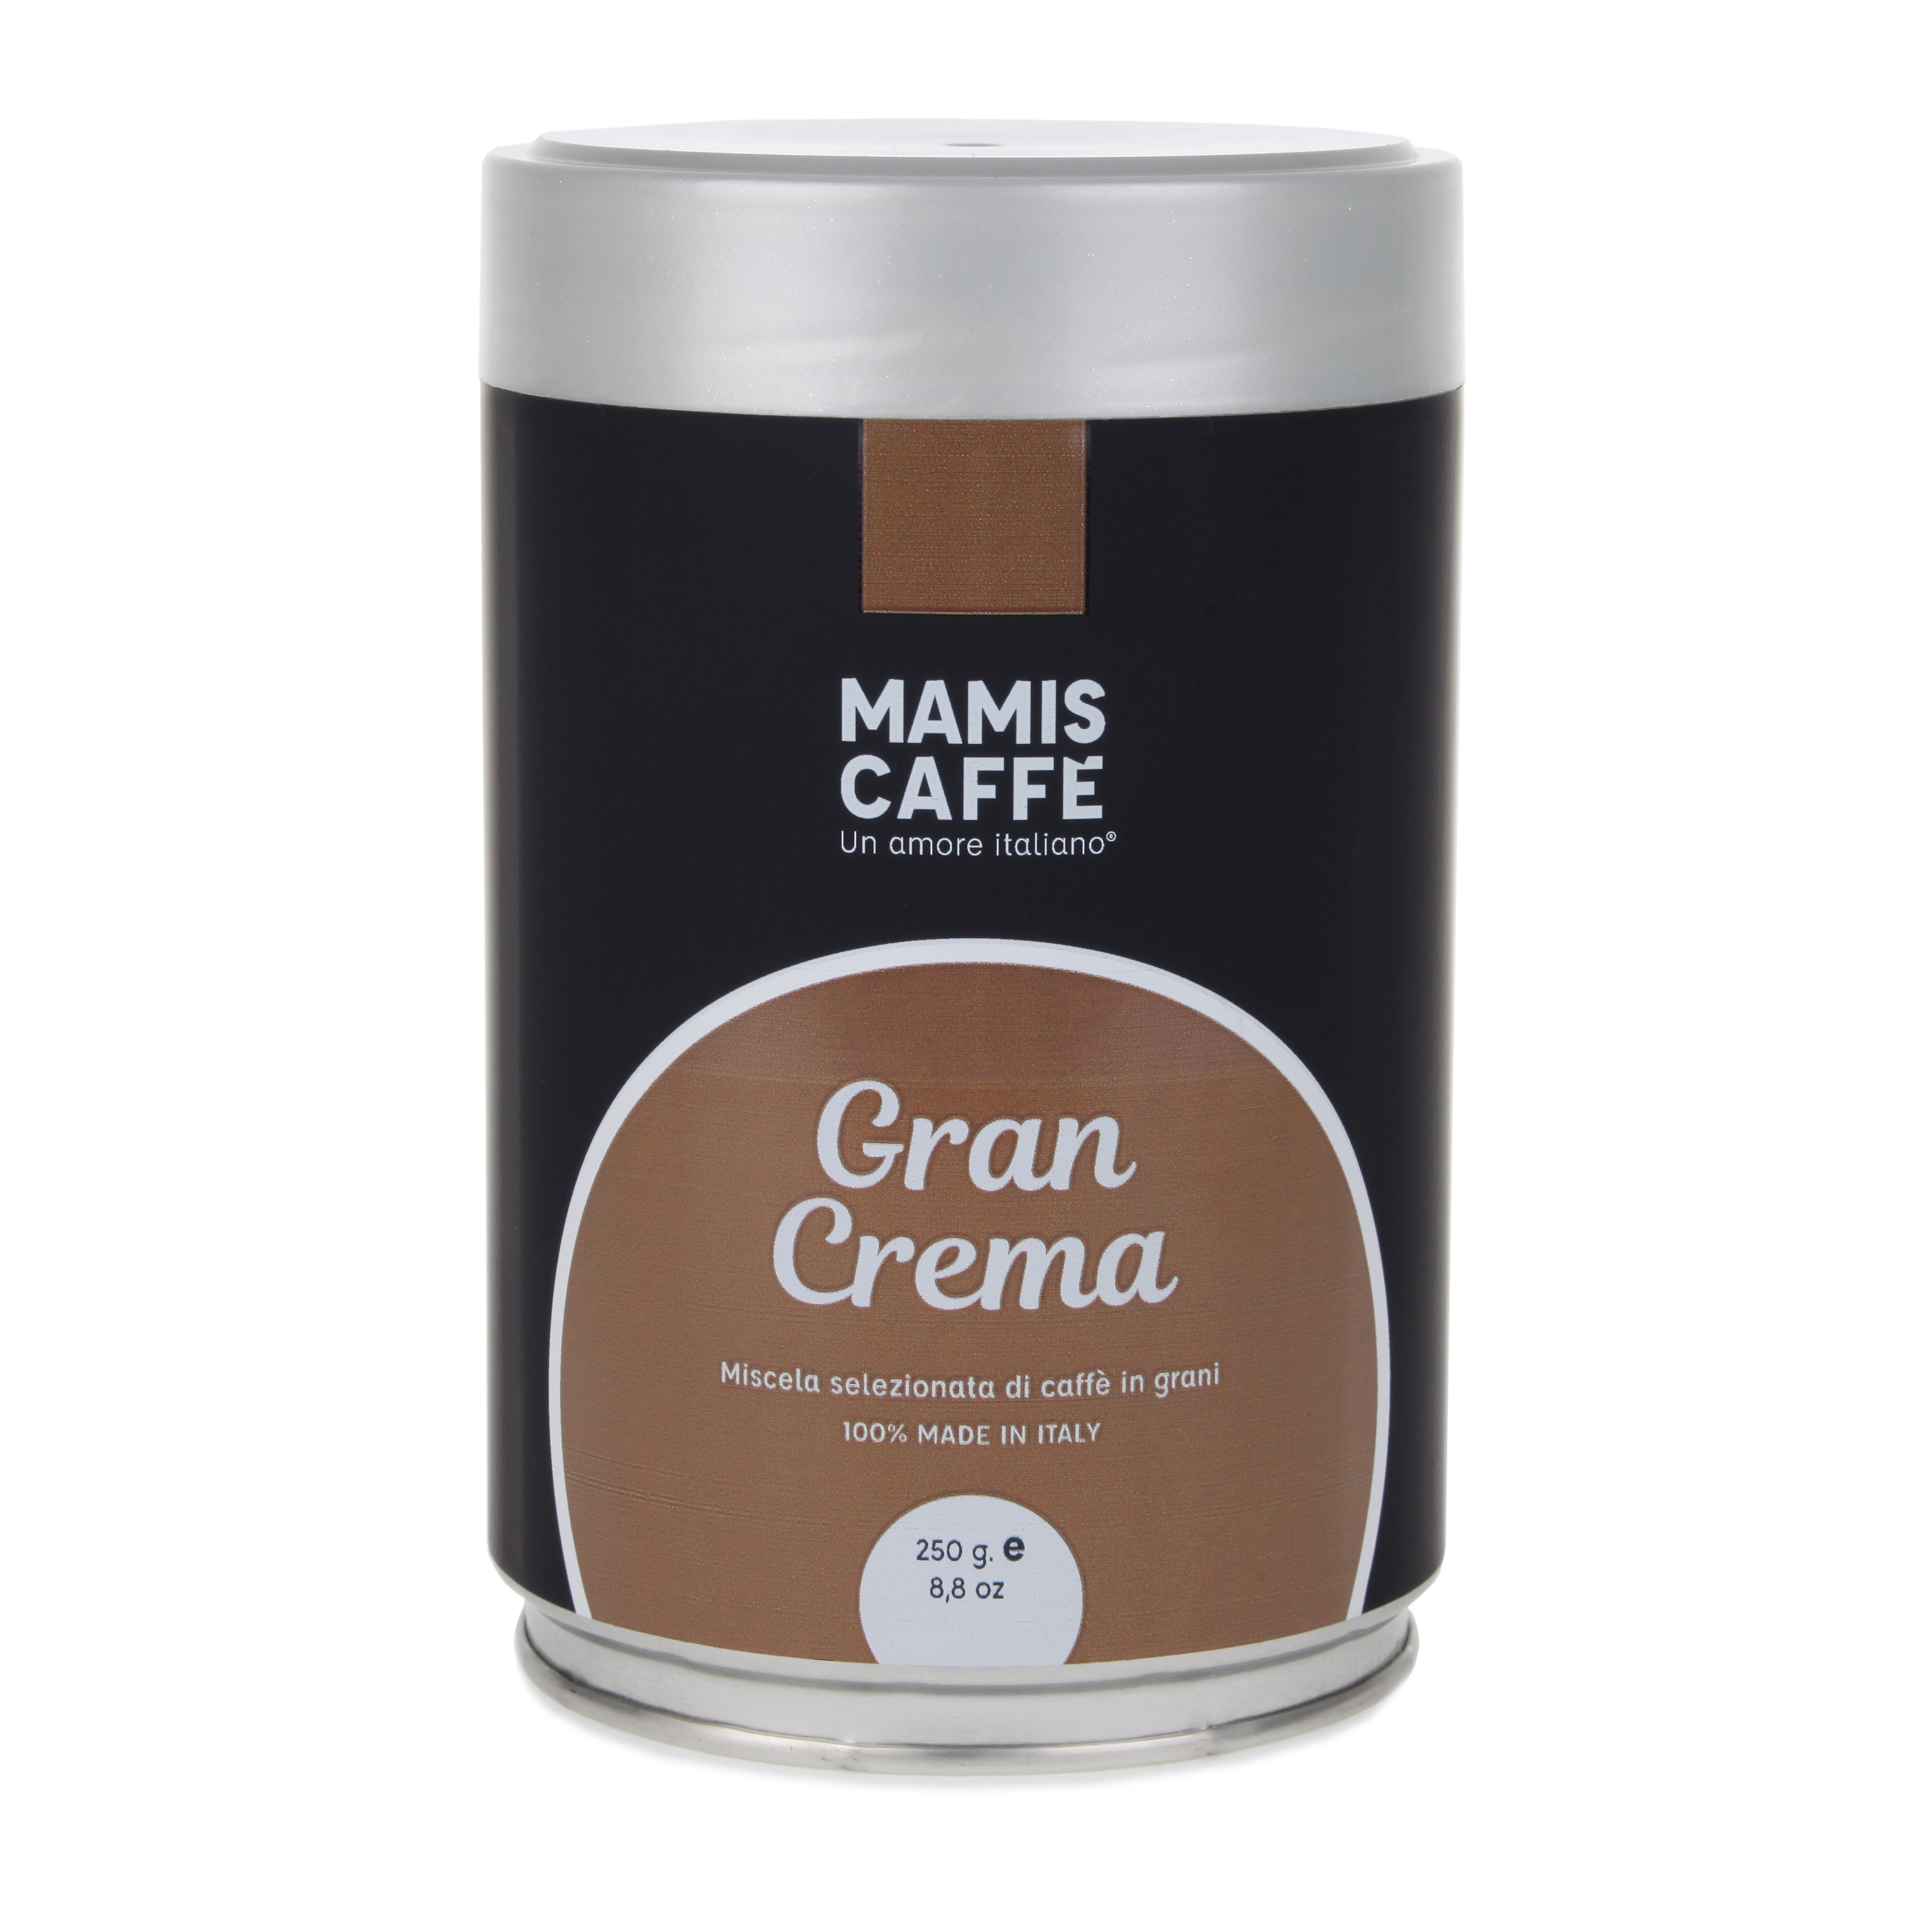 Mamis Caffè Gran Crema